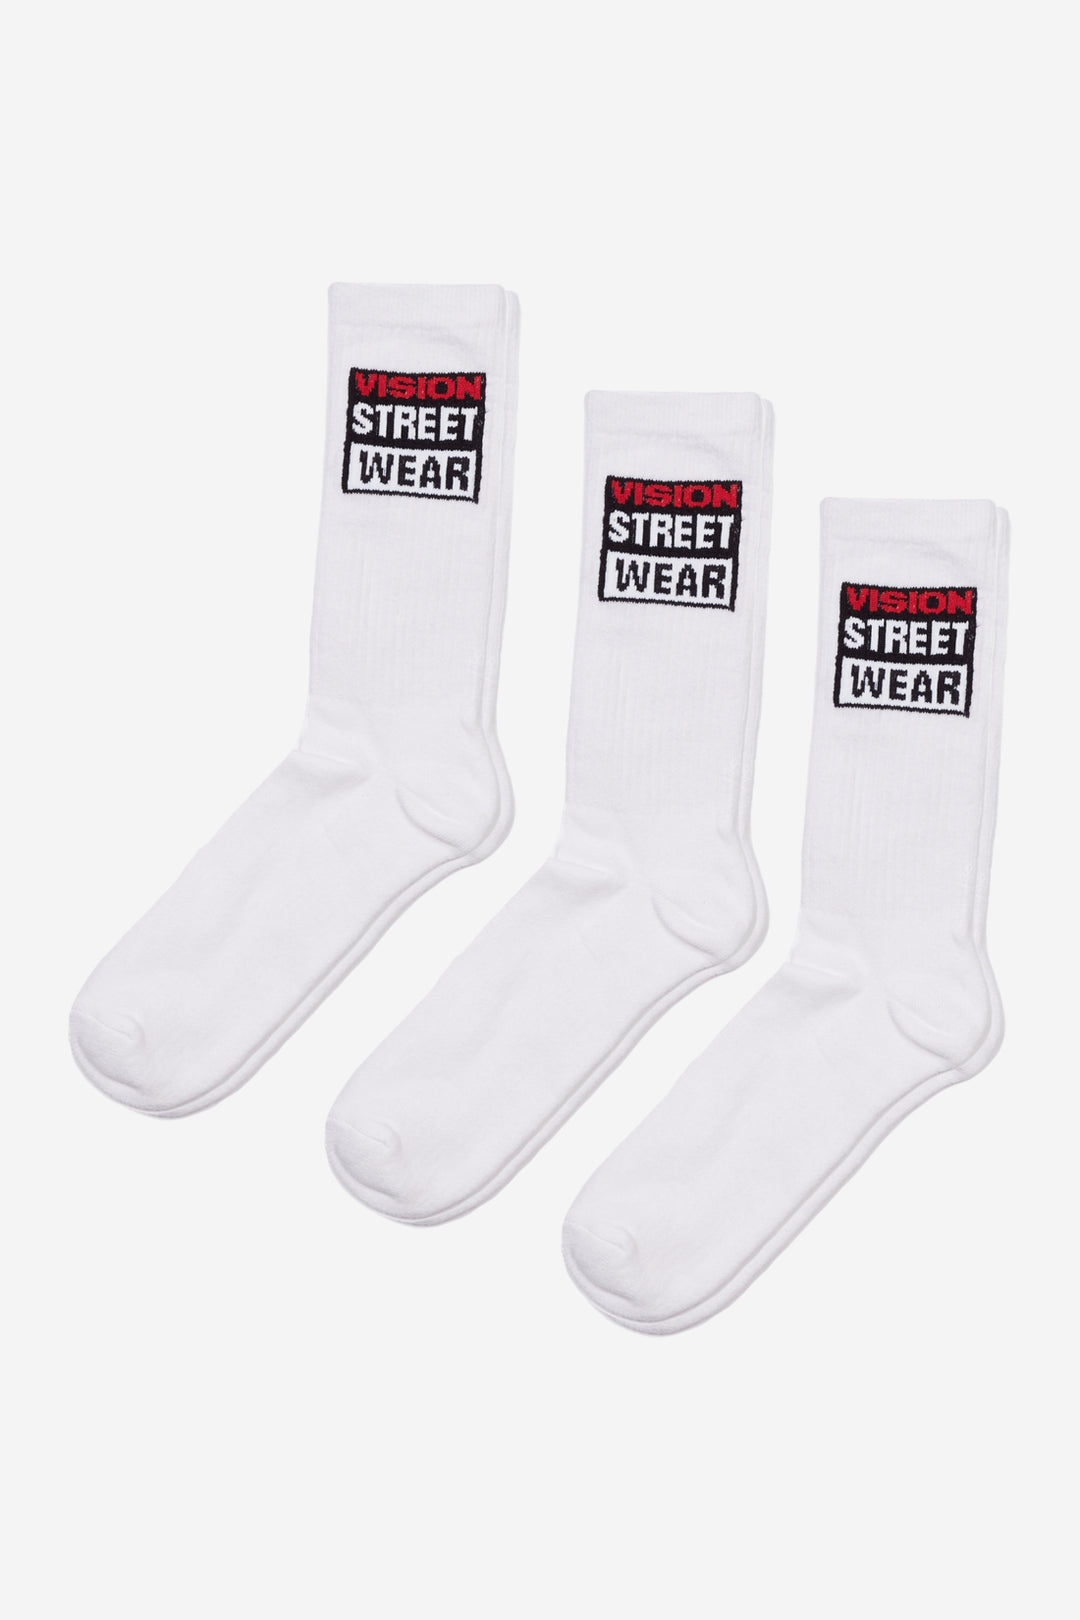 Vision Street Wear Skateboard Sports Socks Ivory